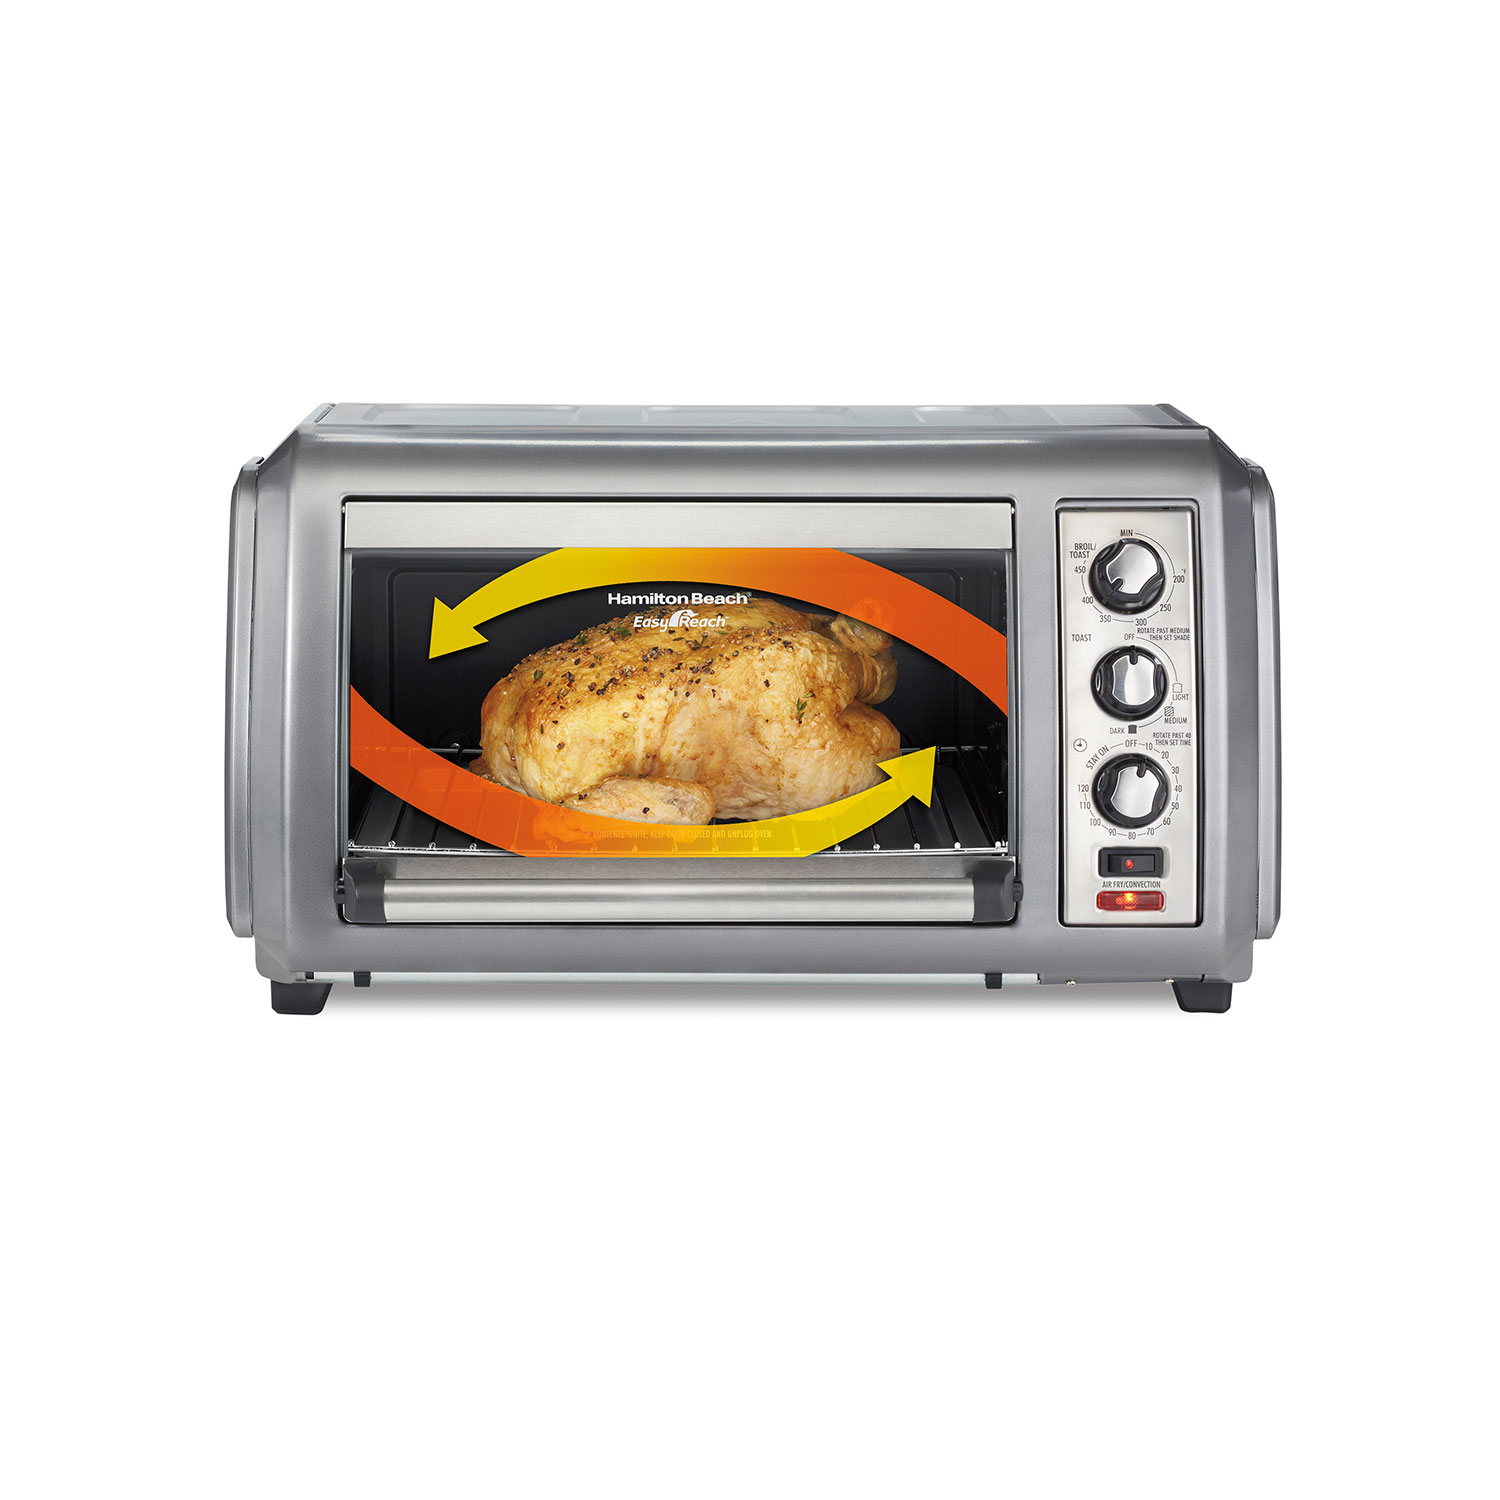 Sure-Crisp® Air Fryer Countertop Toaster Oven with Easy Reach® Door, Stainless Steel (31436)